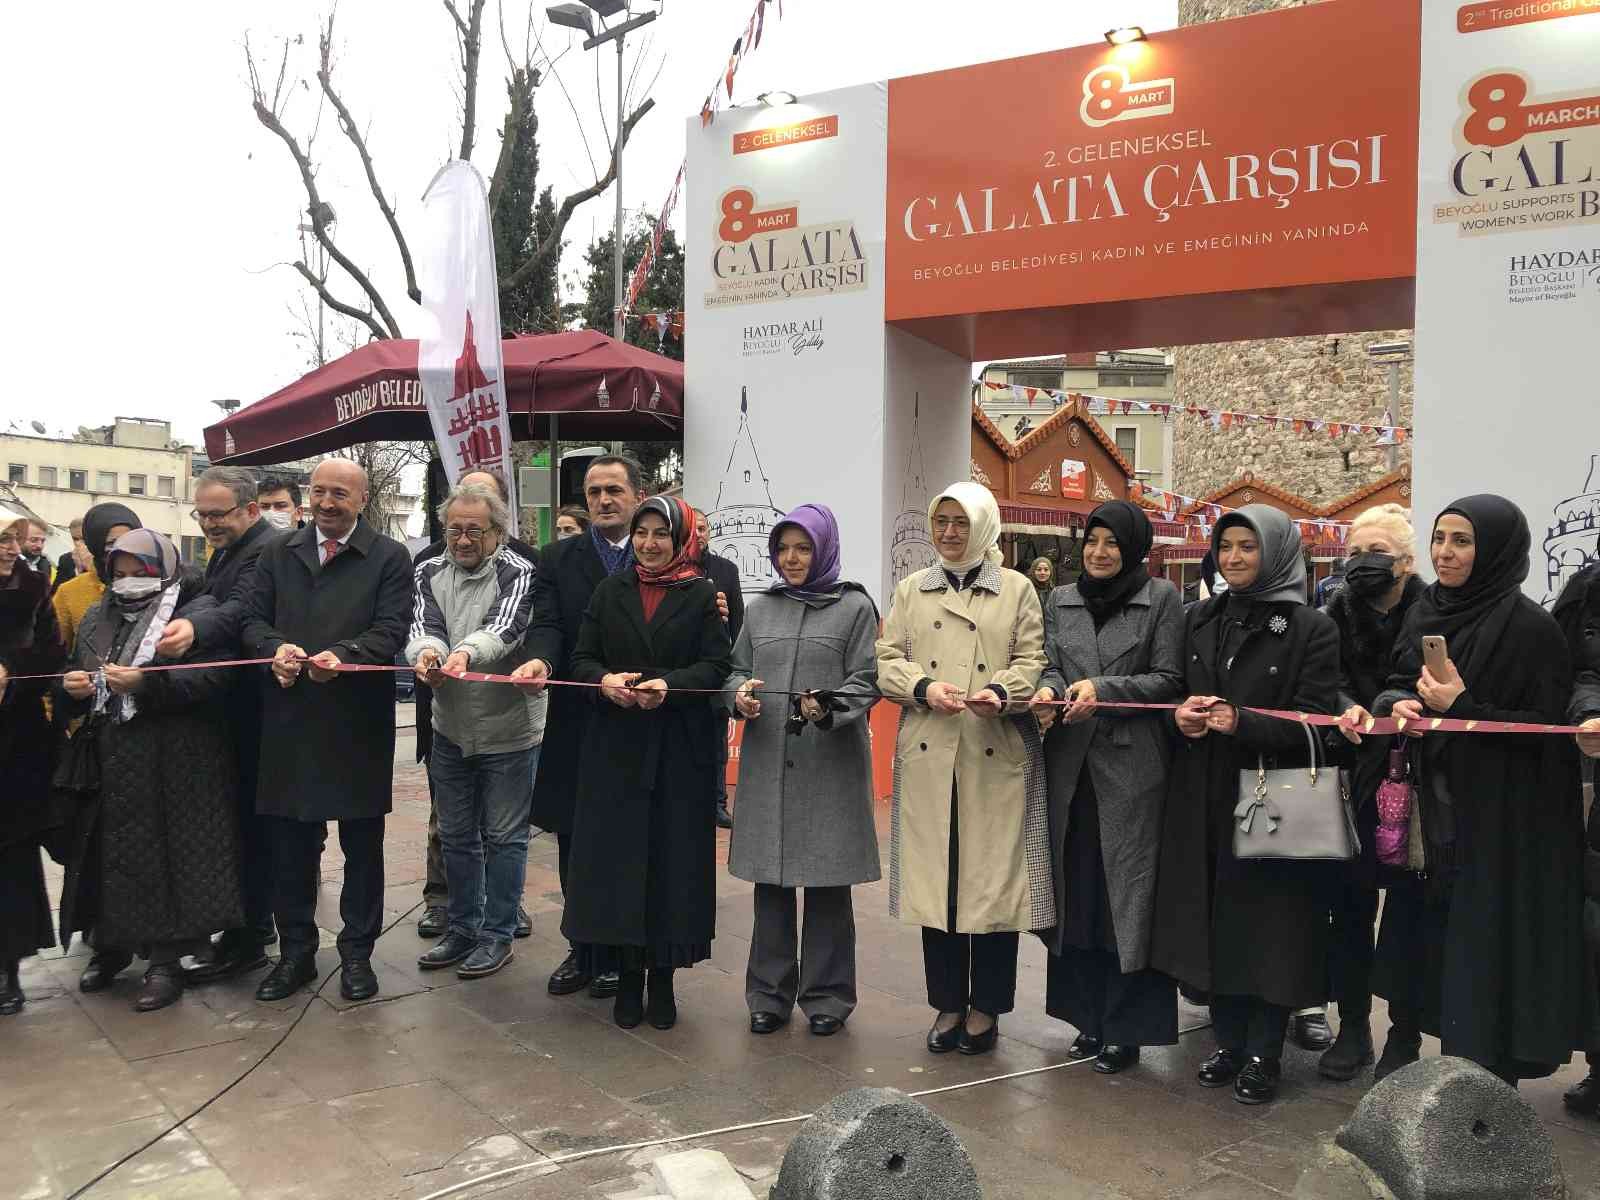 Beyoğlu’nda ’8 Mart Galata Çarşısı’ açıldı #istanbul